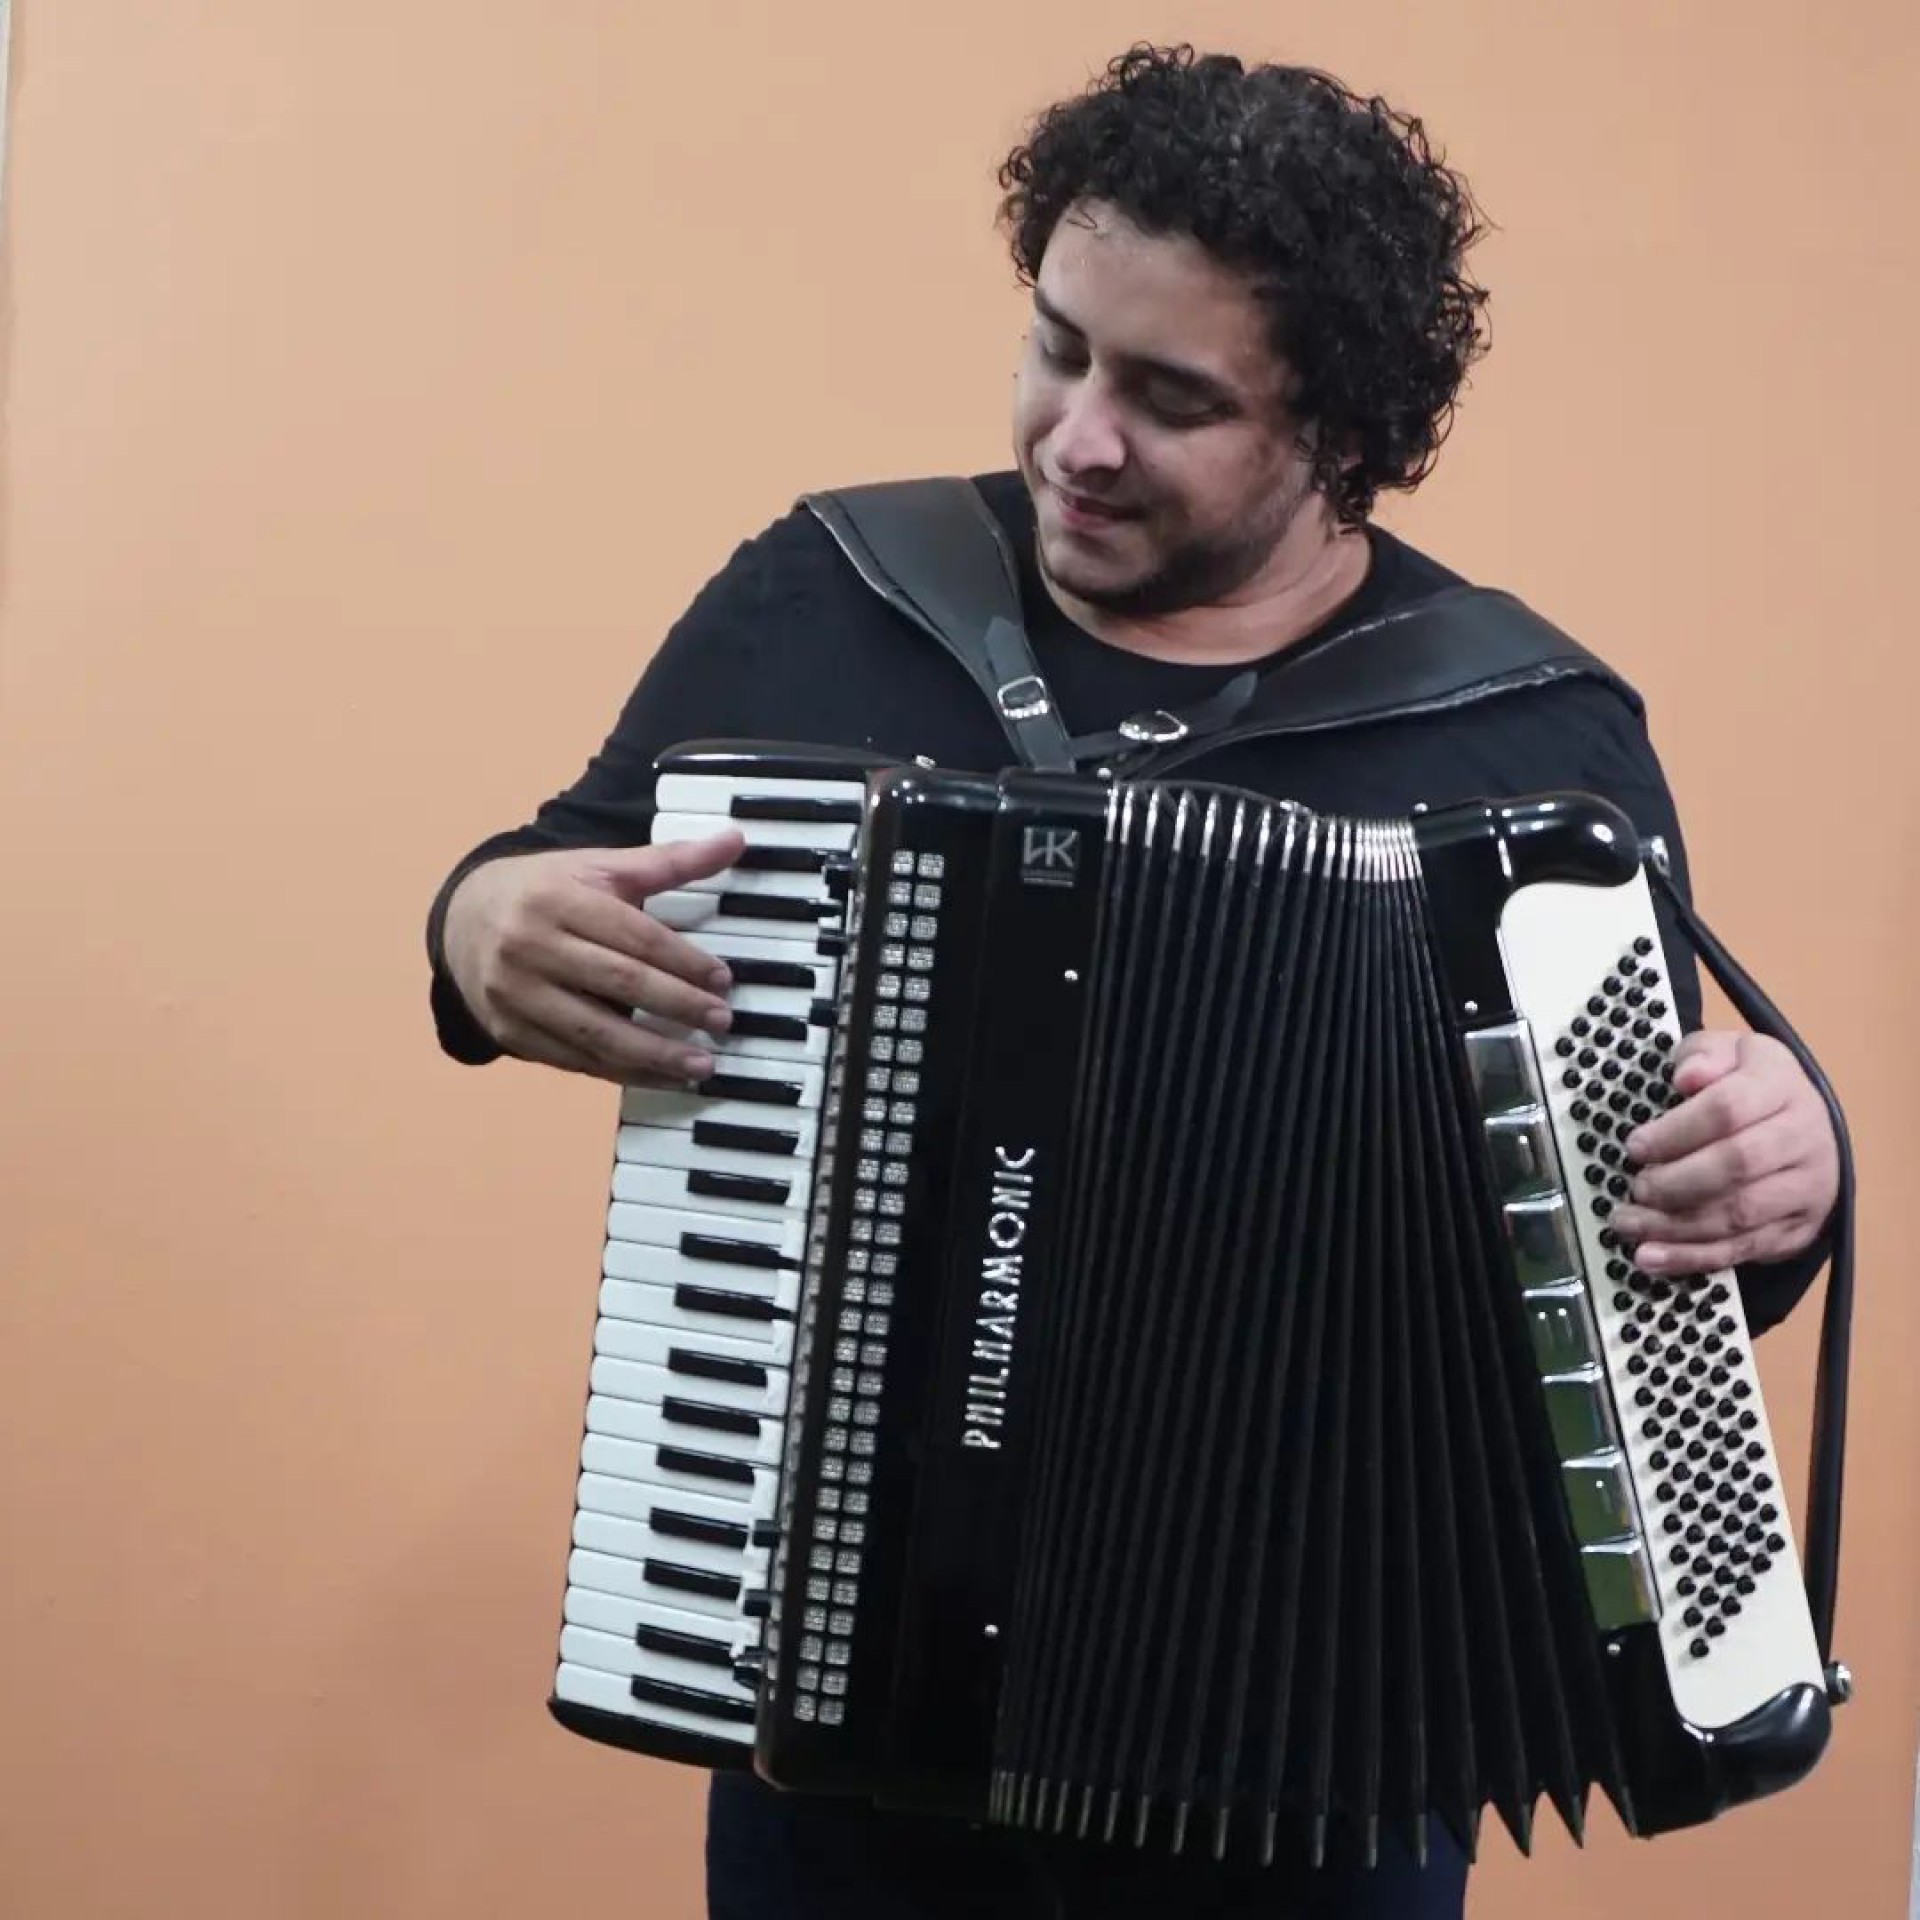 O acordeonista Freitas Filho realiza apresentação no Cantinho do Frango em 7 de agosto de 2022 (Foto: Allan Kardec/Divulgação)